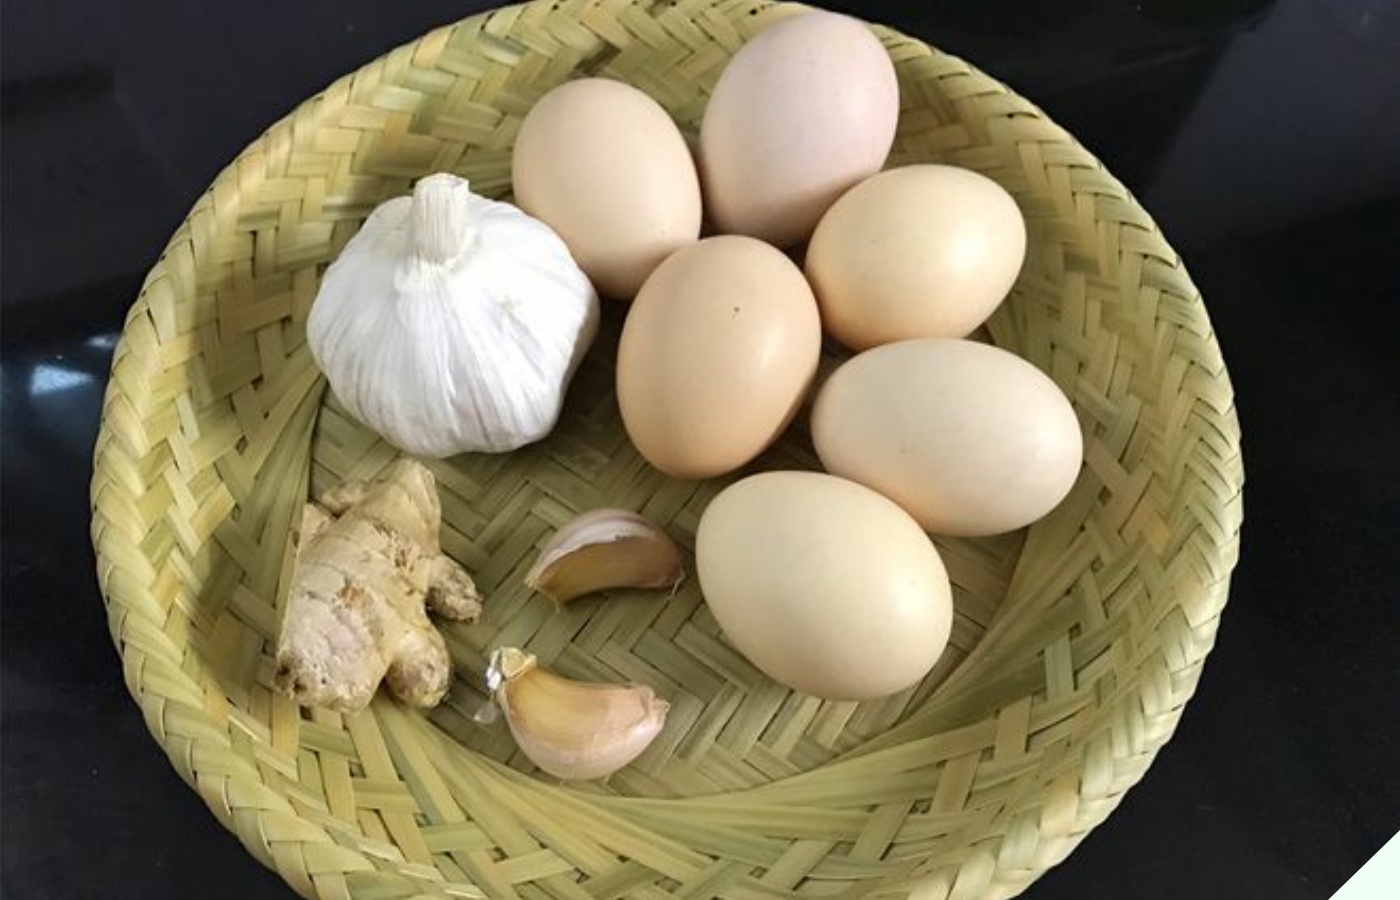 Cứ mua trứng về là cọ rửa thật sạch, chuyên gia lắc đầu nói sai lầm, bảo sao trứng nhanh hỏng, mất sạch chất dinh dưỡng - 6